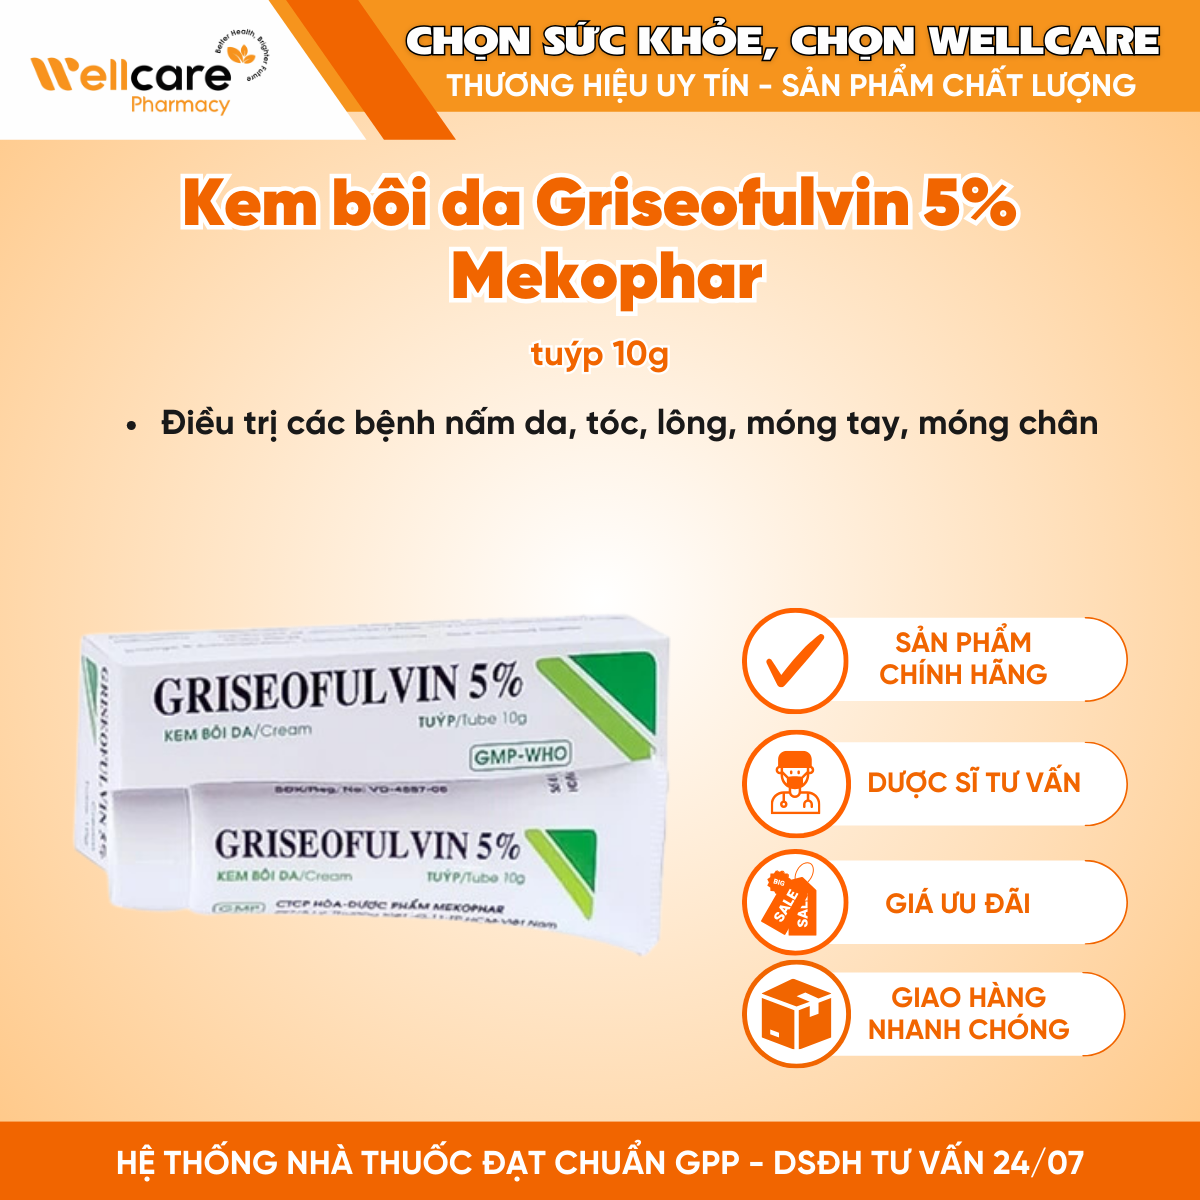 Griseofulvin cream 5% Mekophar – Điều trị nhiễm nấm ngoài da (10g)